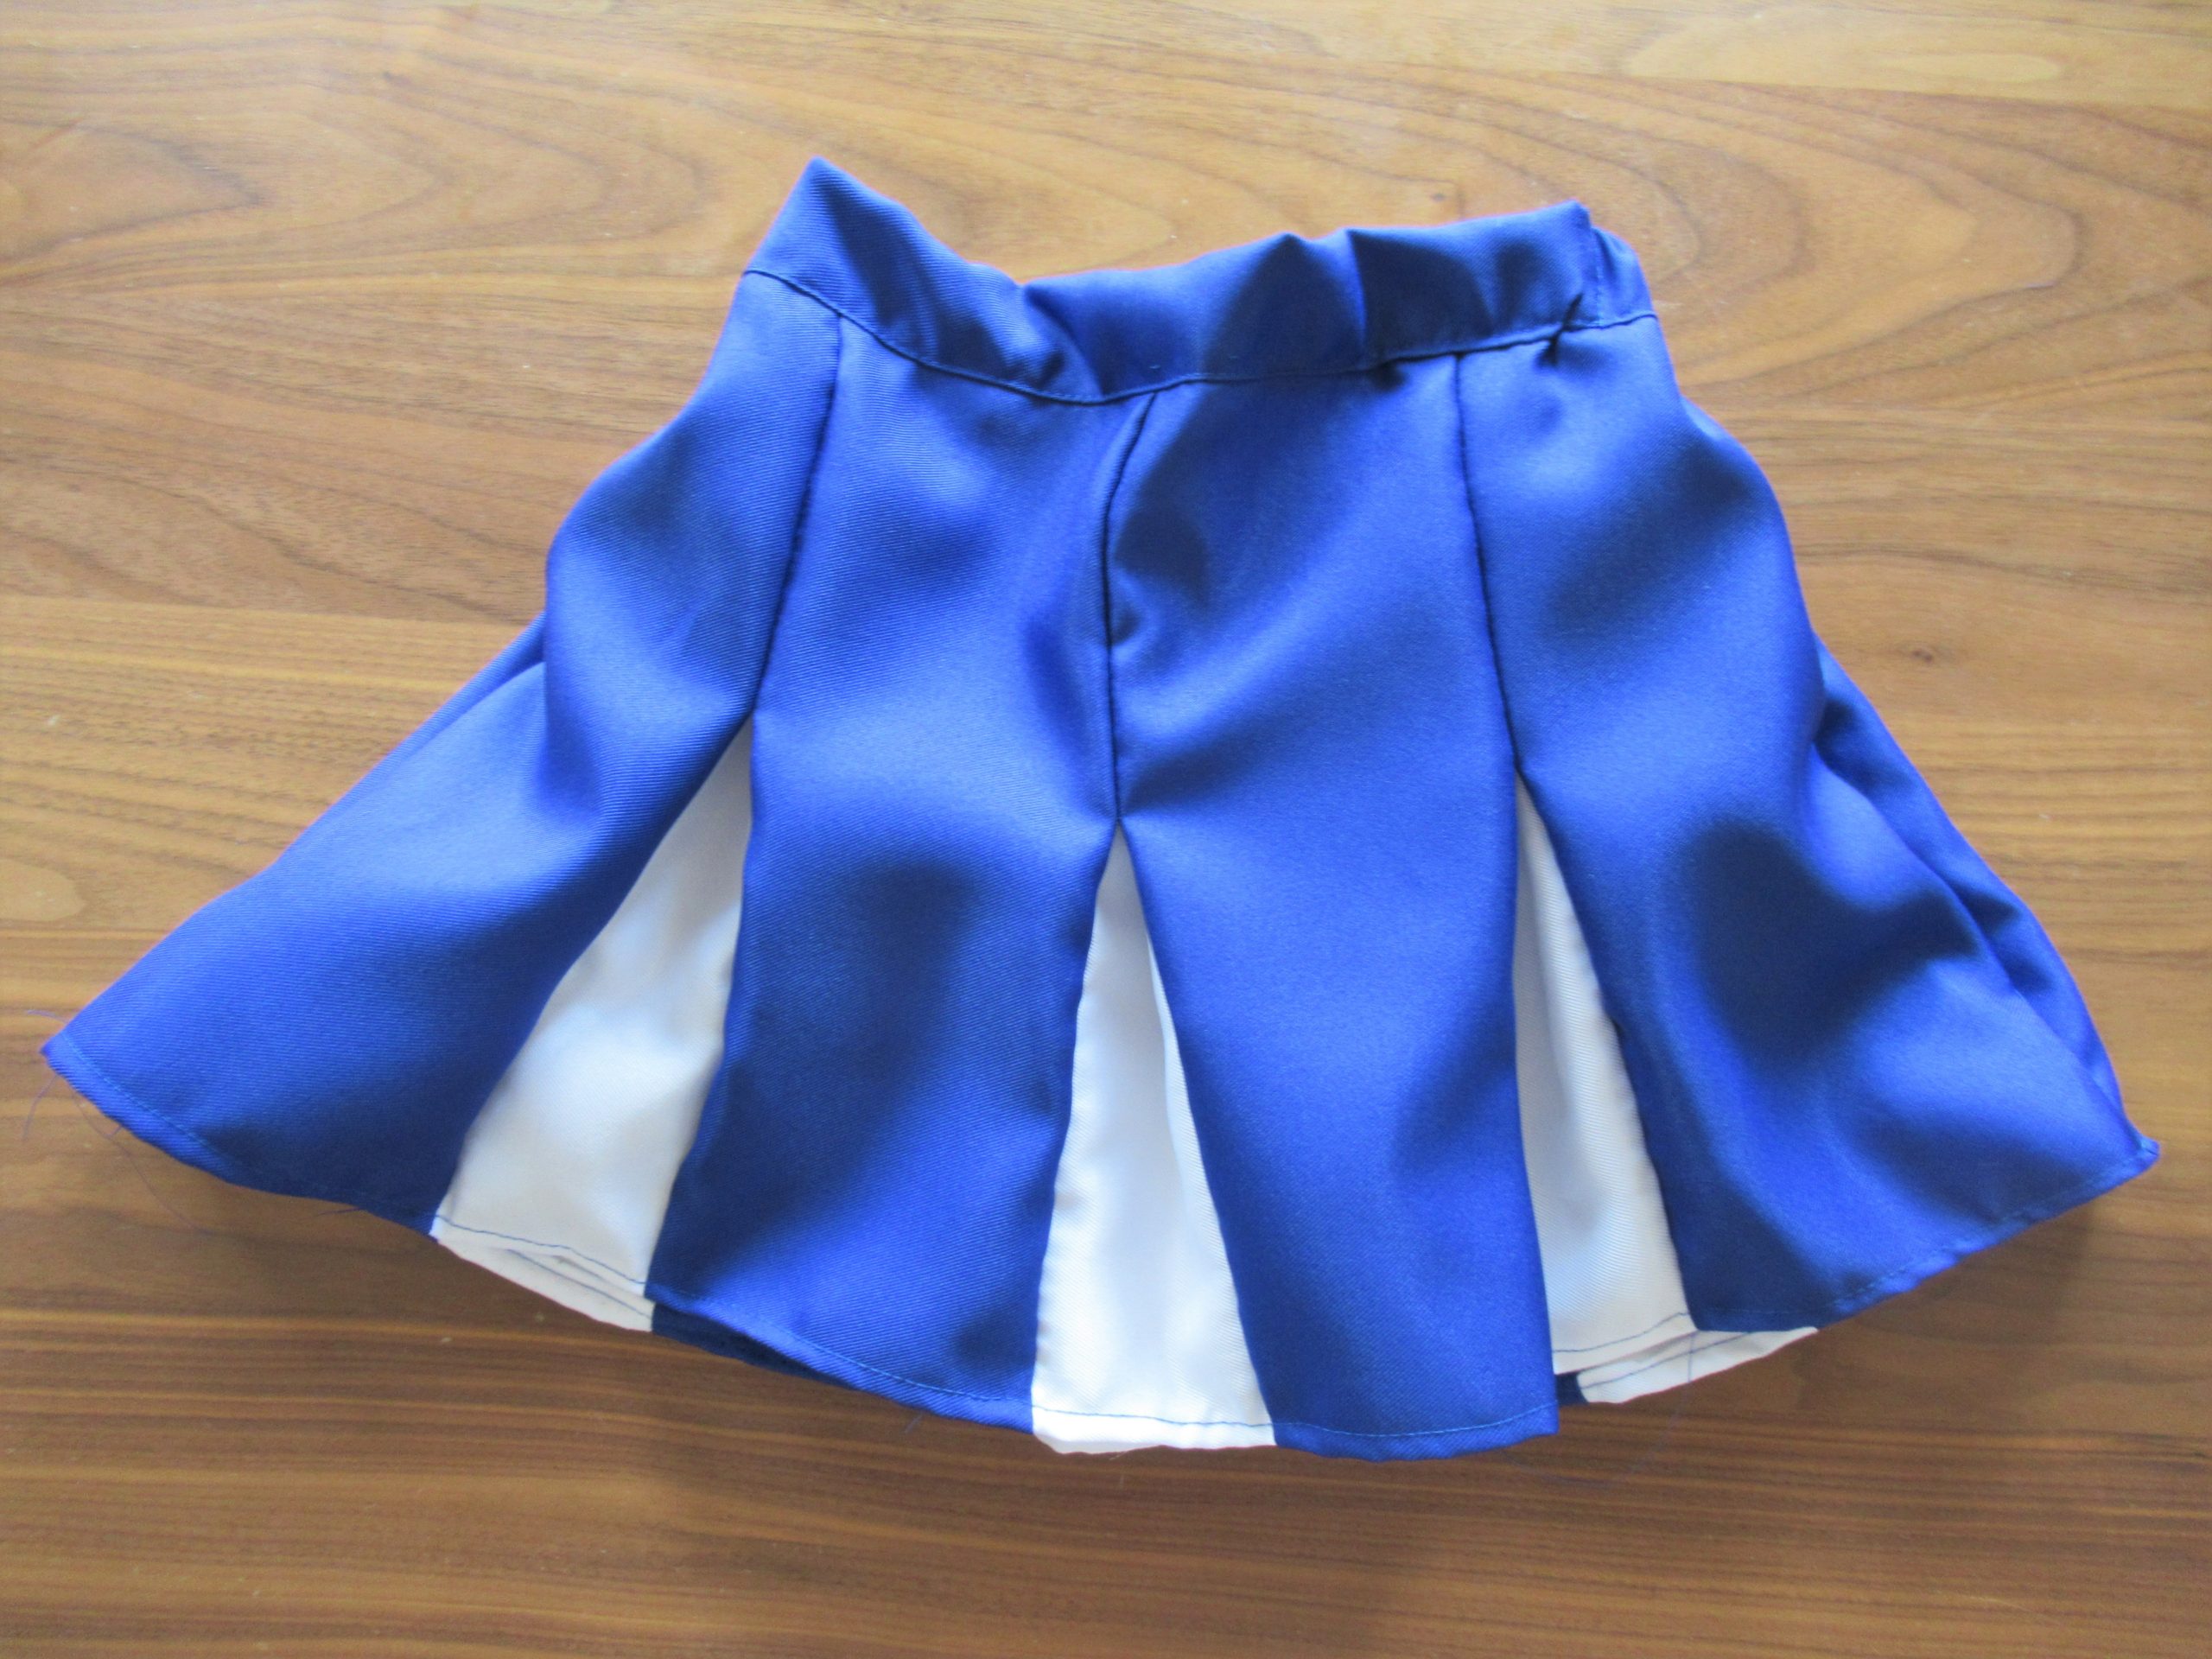 【チアのスカートの作り方】ゴム仕様で2色カラーのボックスプリーツの簡単な作り方